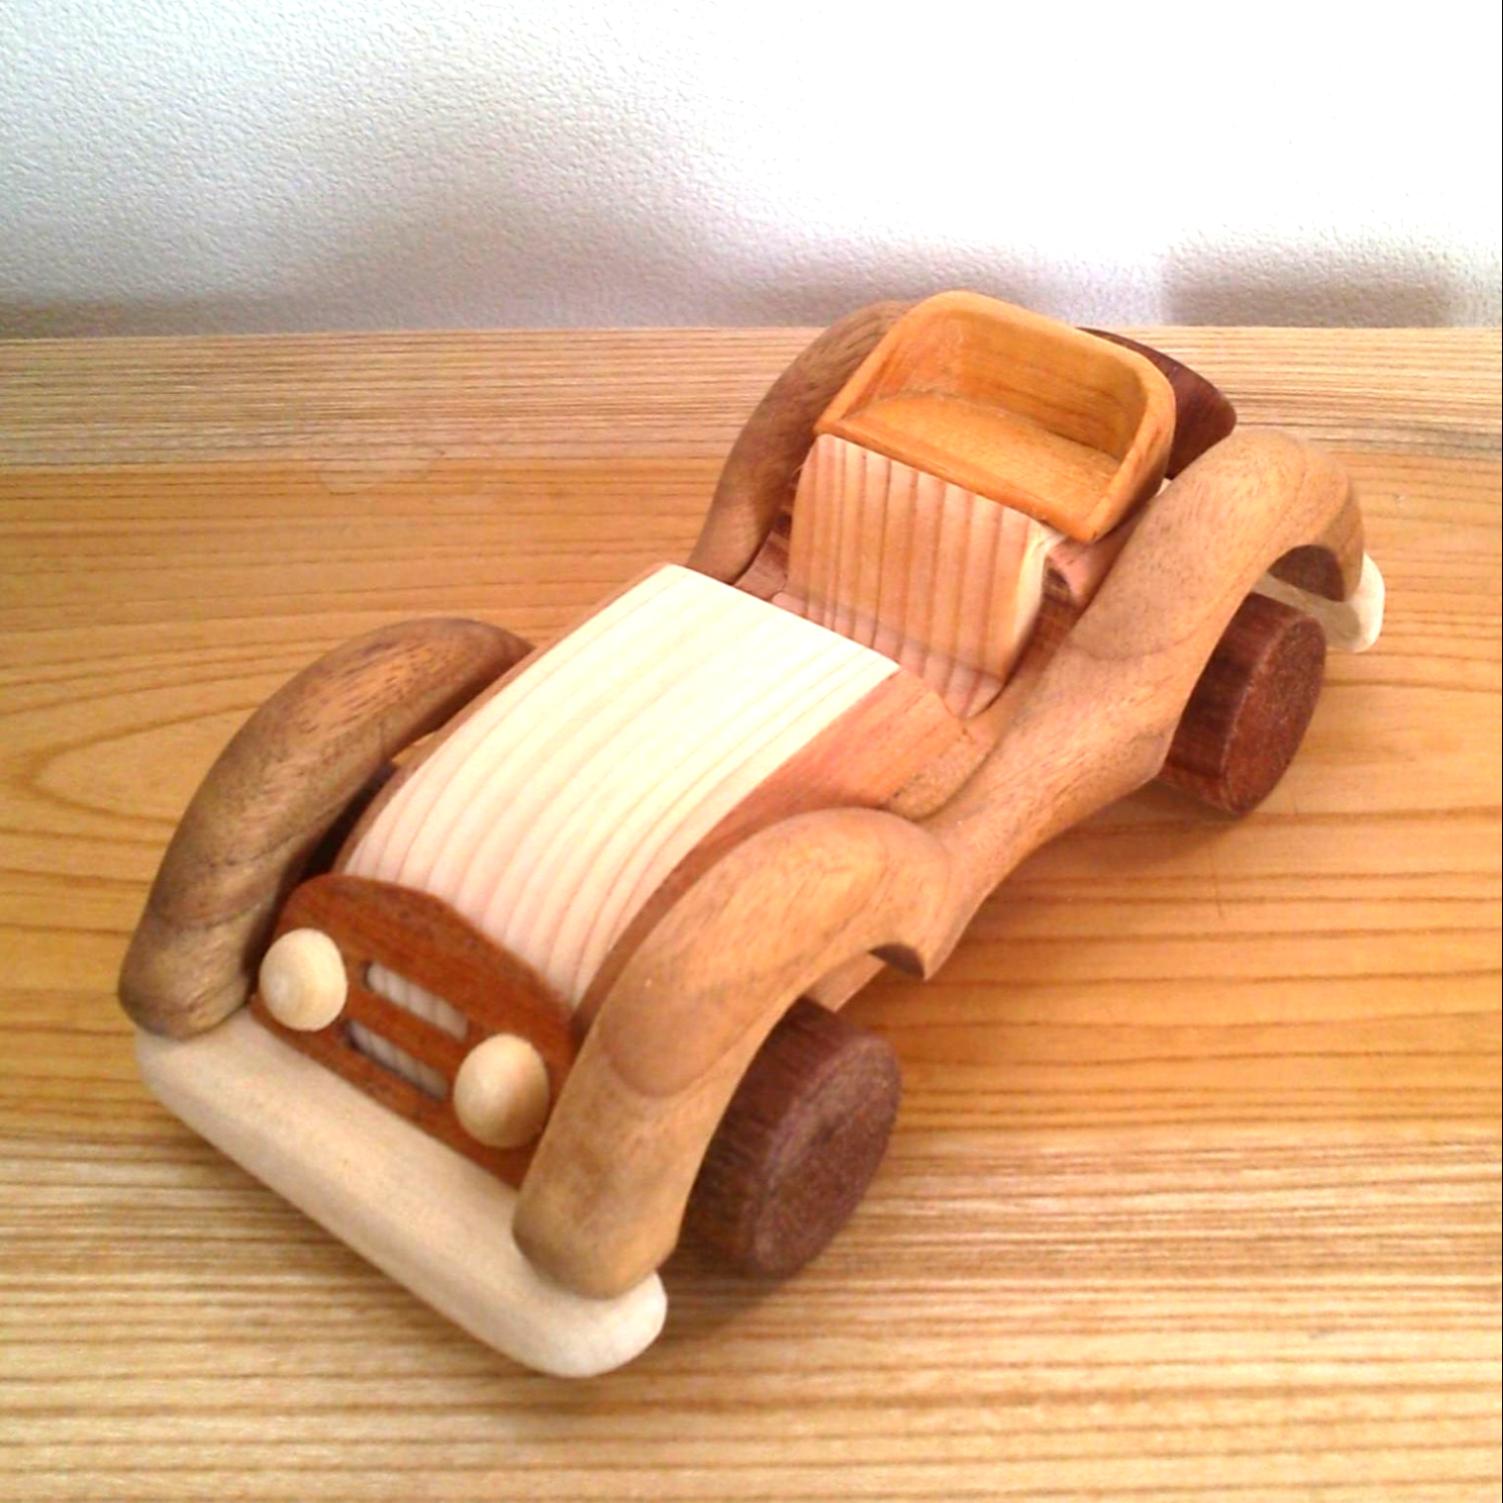 木の車 クラシックカー おもちゃ・人形 あしがら丸太細工 通販